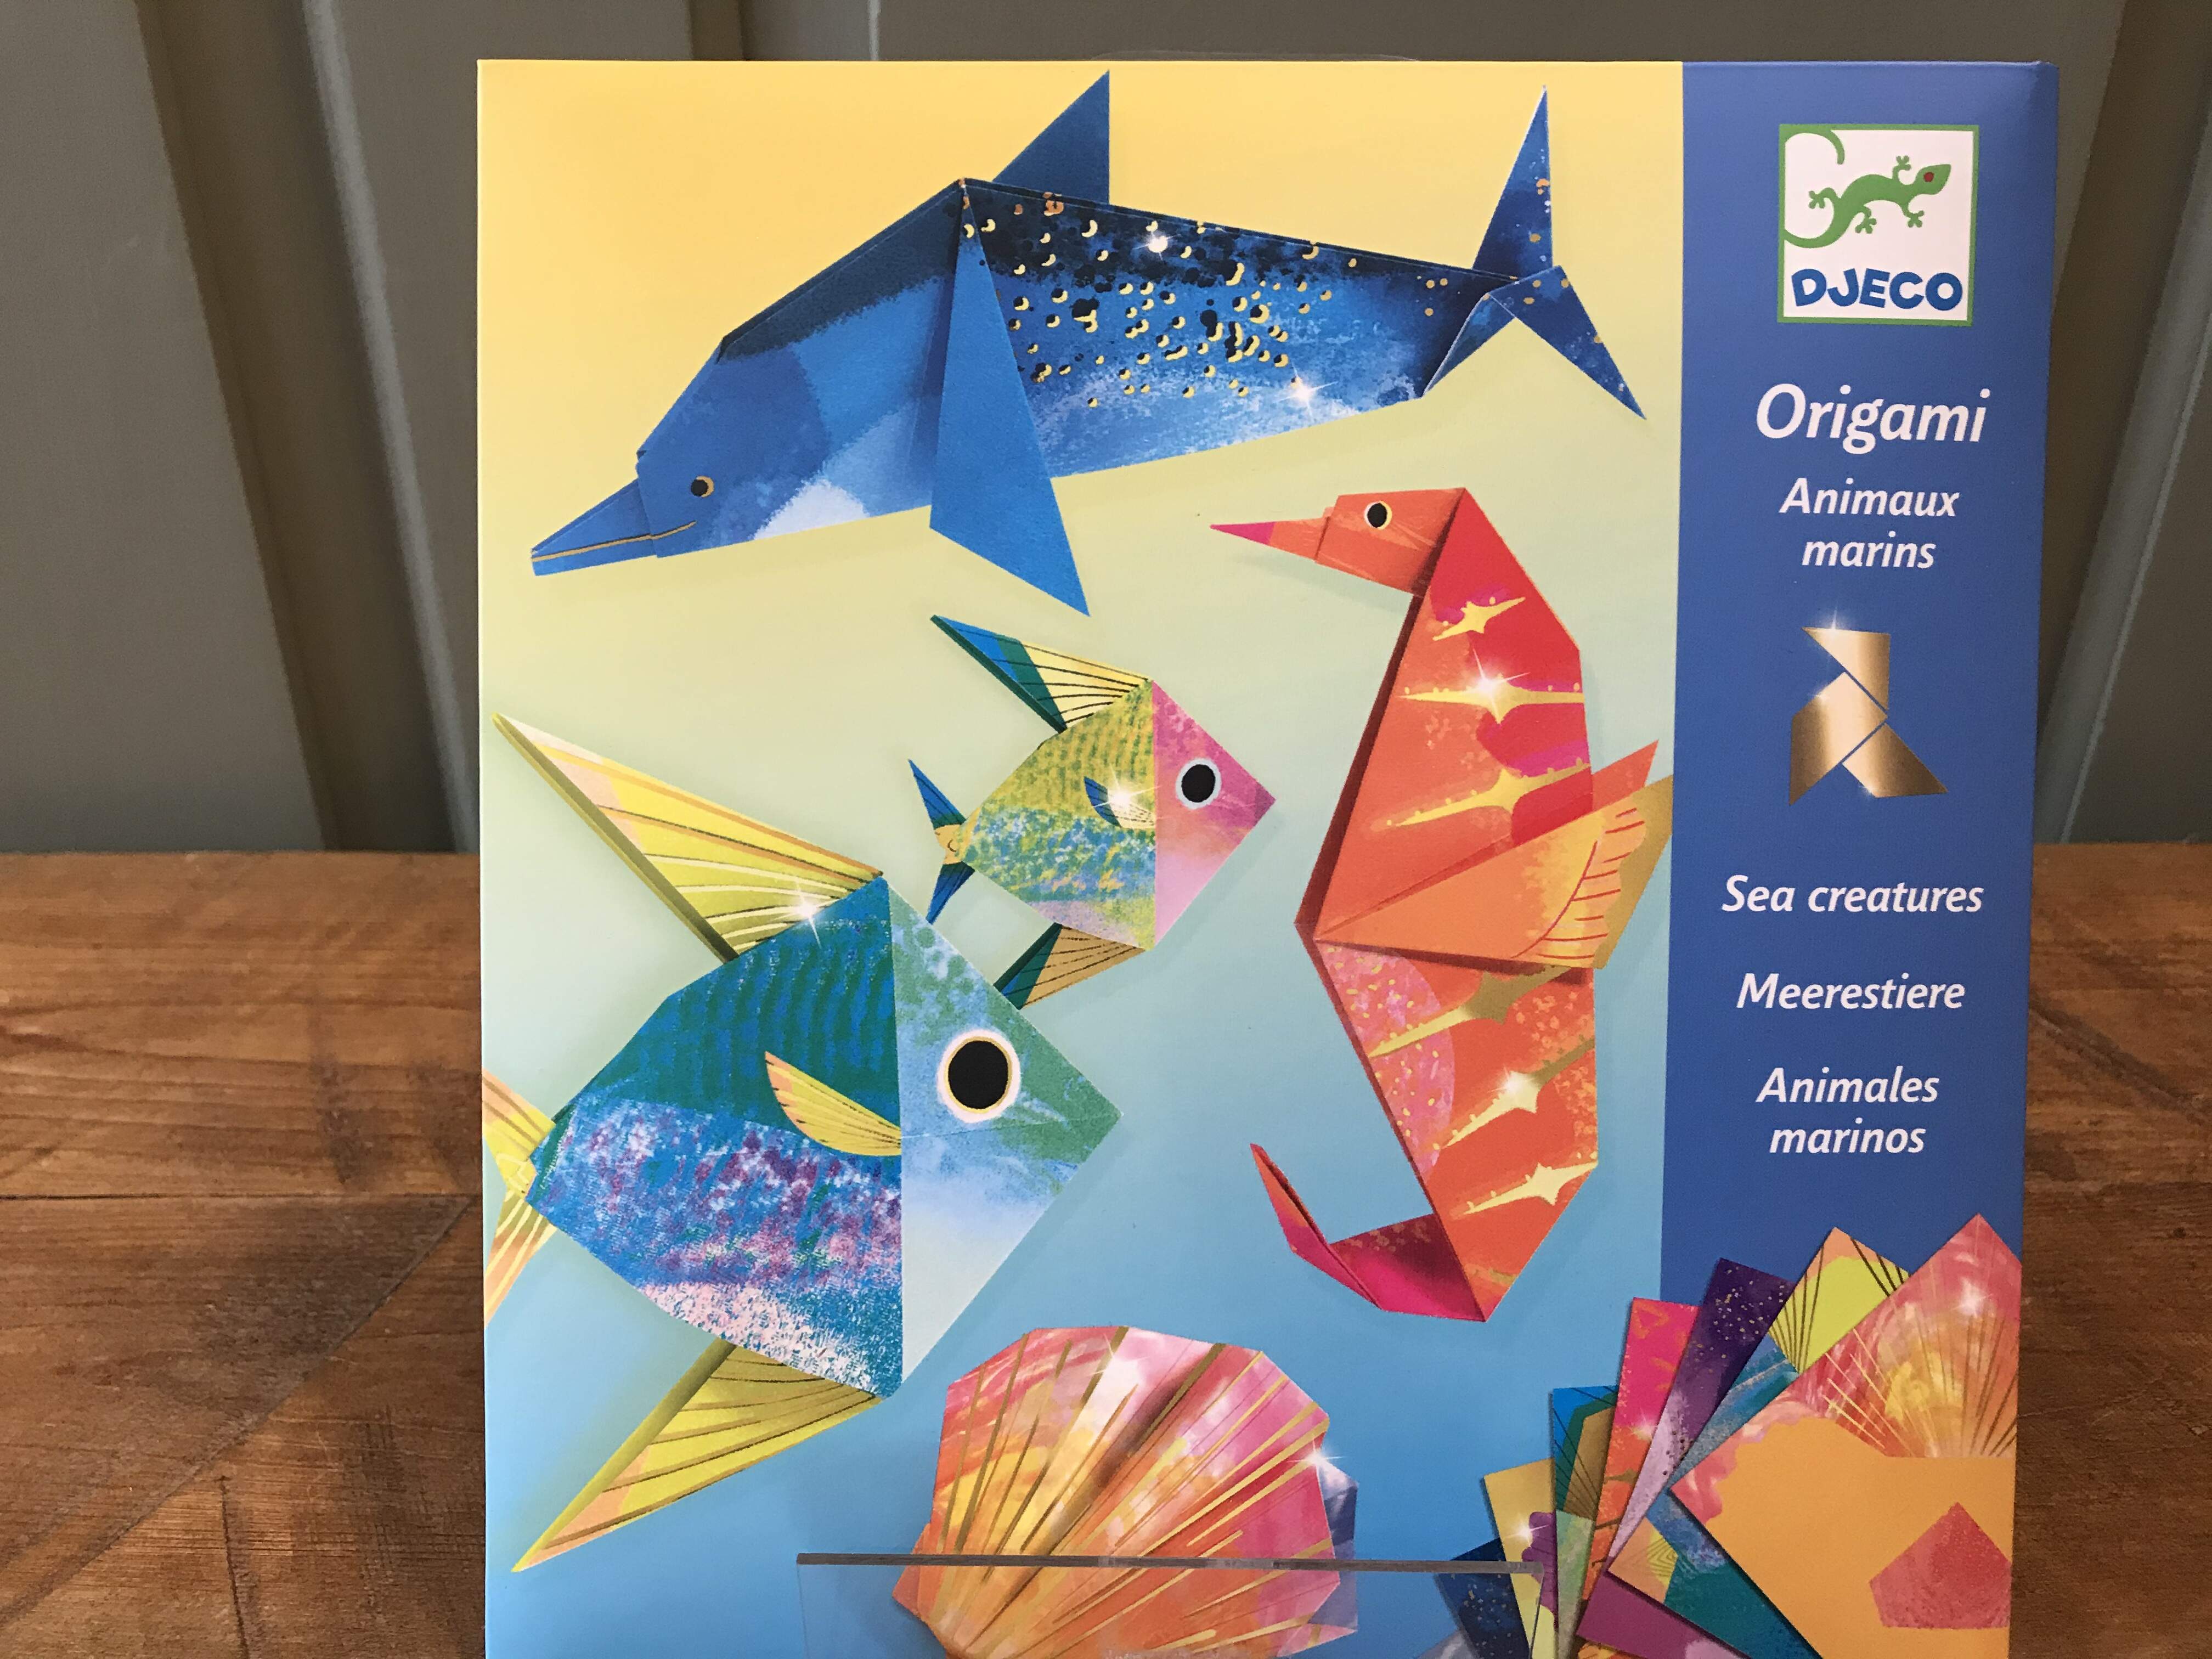 Djeco Origami and Stencils